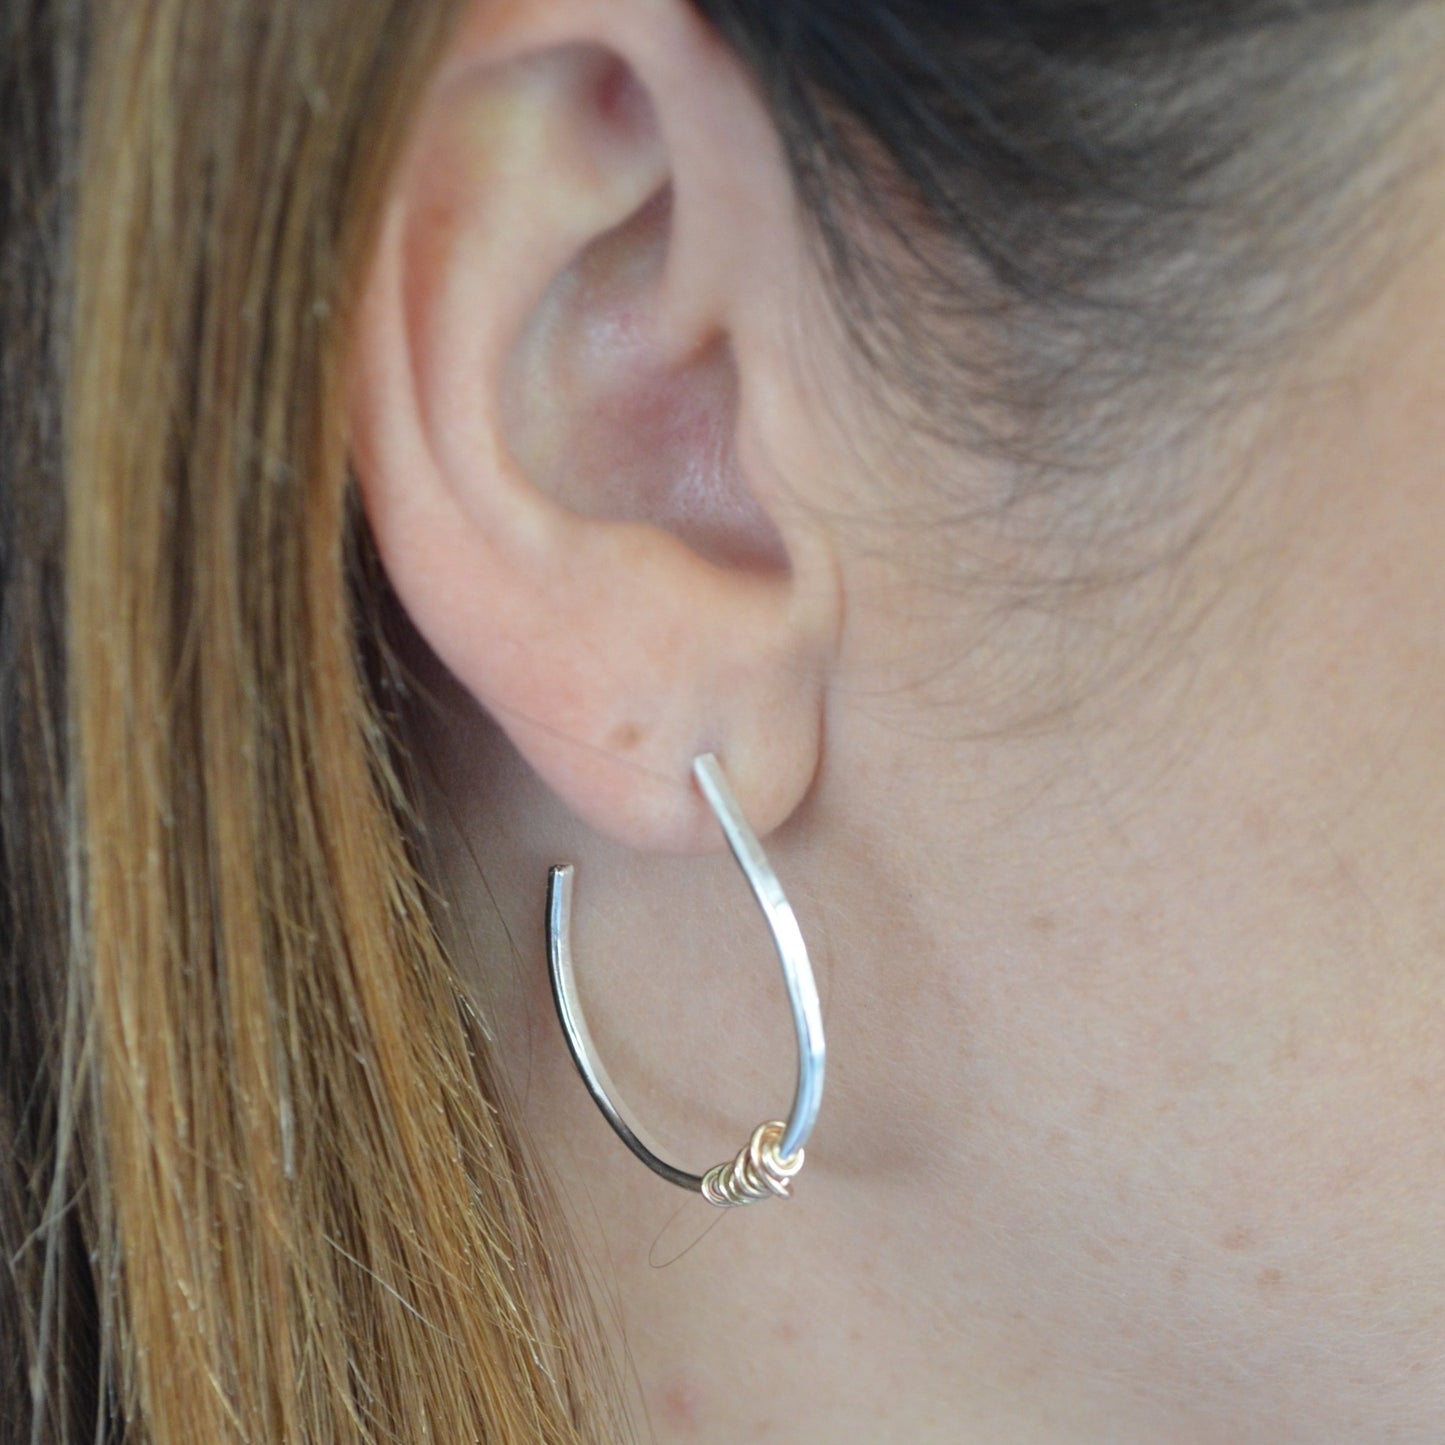 The Tanner Hoop Earrings - sterling silver hoop earrings with 12ct gold twist - mixed metal earrings